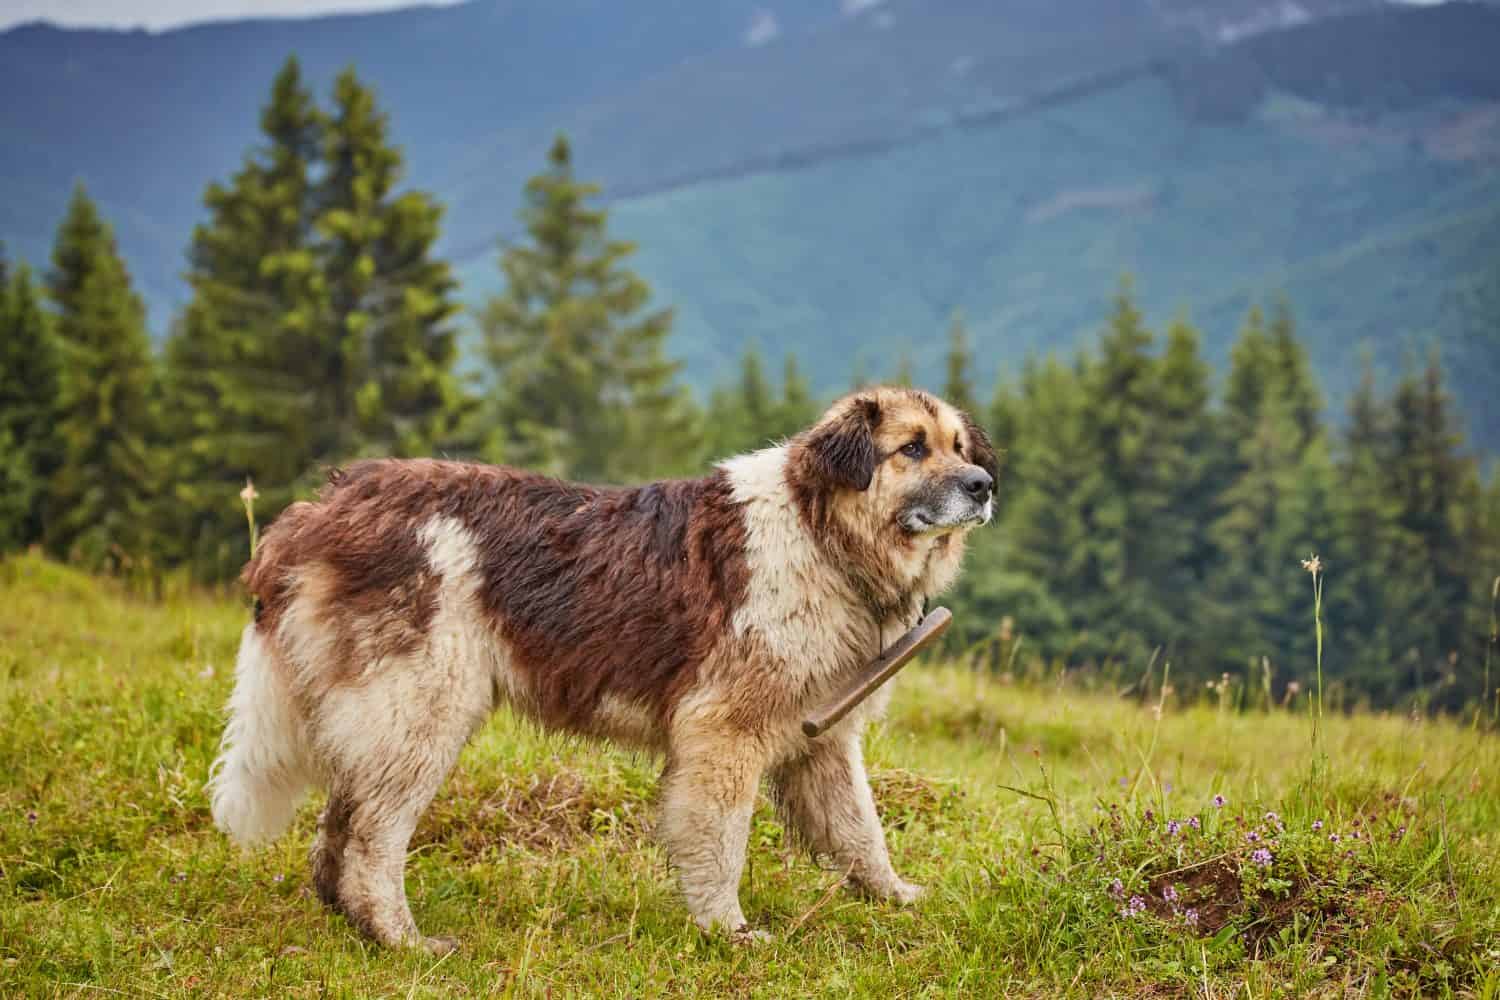 romanian shepherd dog standing on green field